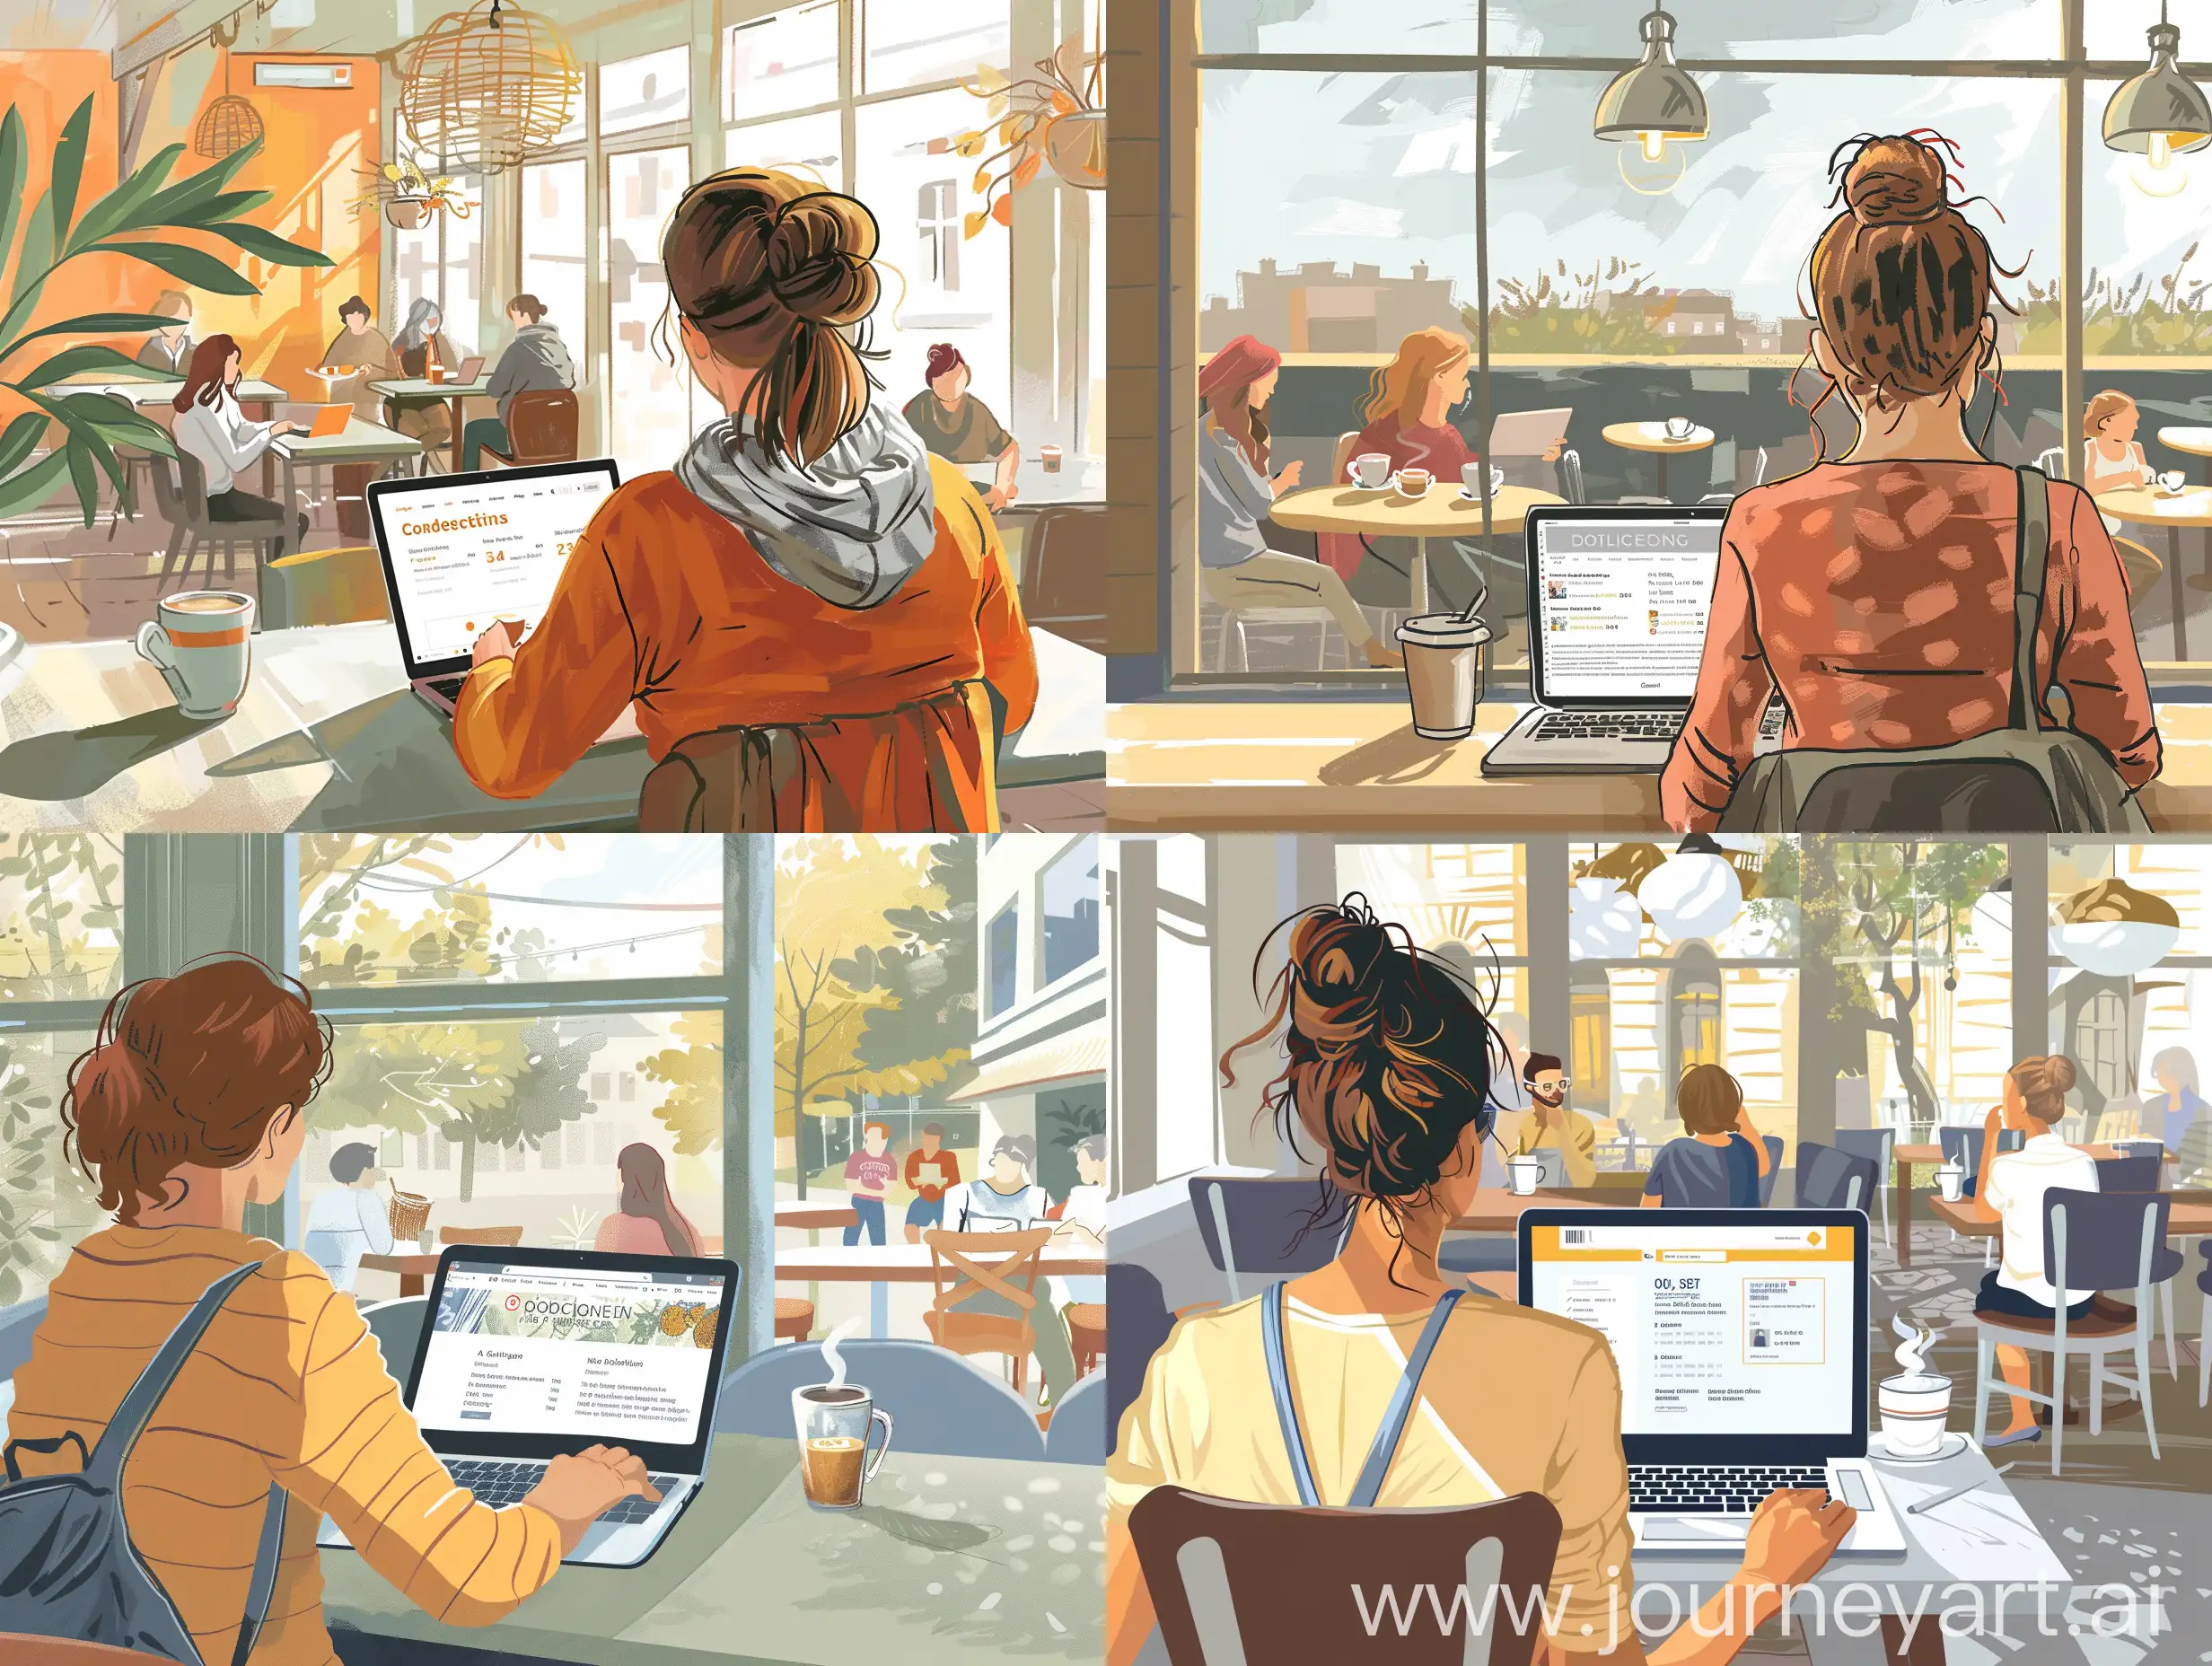 žena koja je okrenuta leđima i sjedi u kafiću i gleda početnu stranicu online obrazovanja na prijenosnom računalu. U kafiću ima nekoliko ljudi koji uživaju u kavi, vani je sunčan dan.